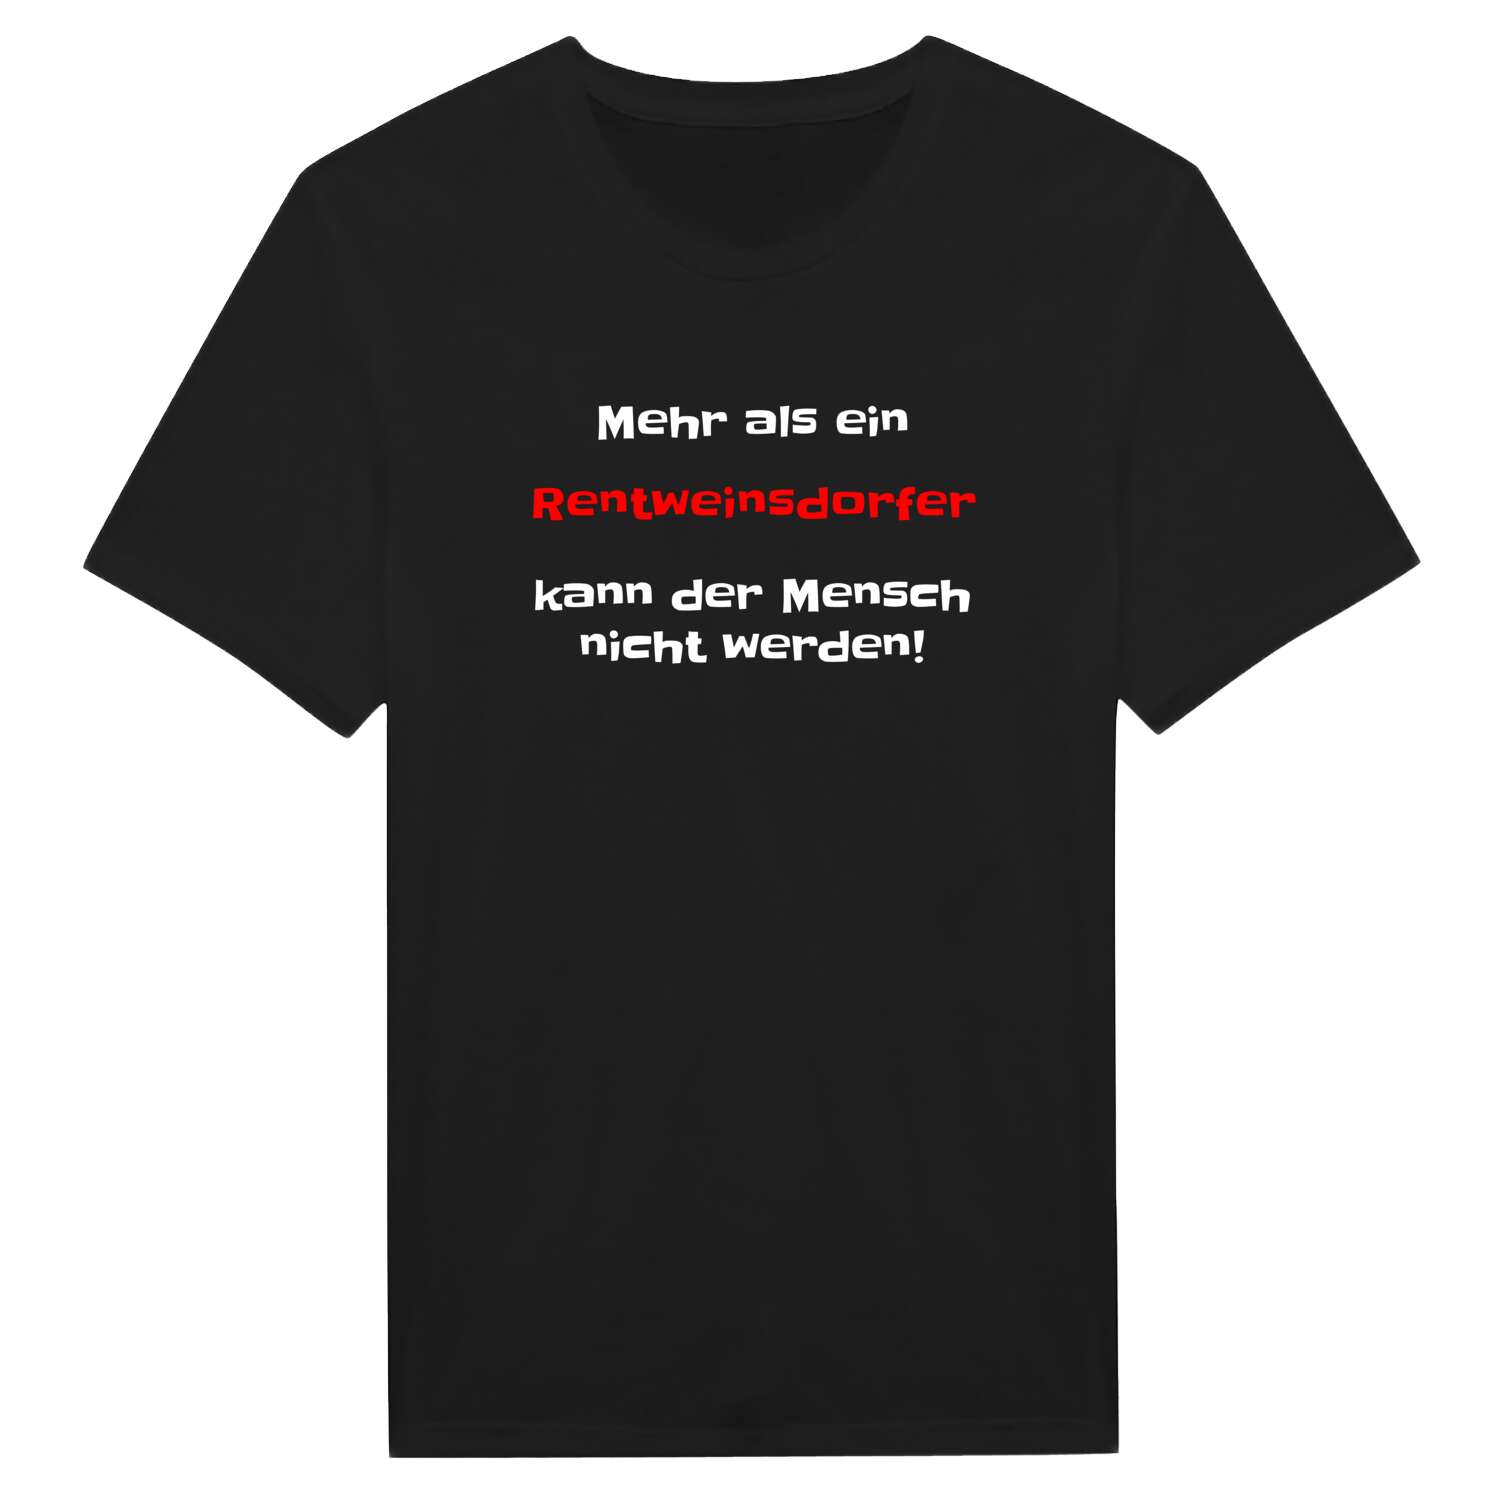 Rentweinsdorf T-Shirt »Mehr als ein«